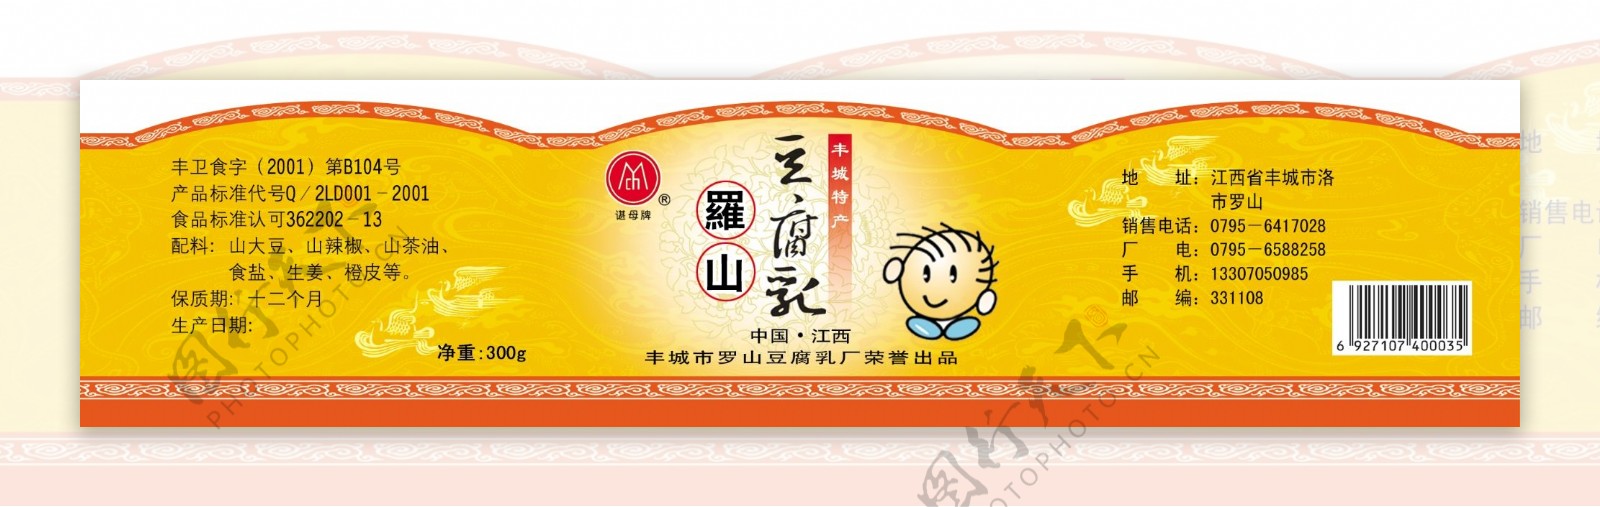 谌母豆腐乳标签图片